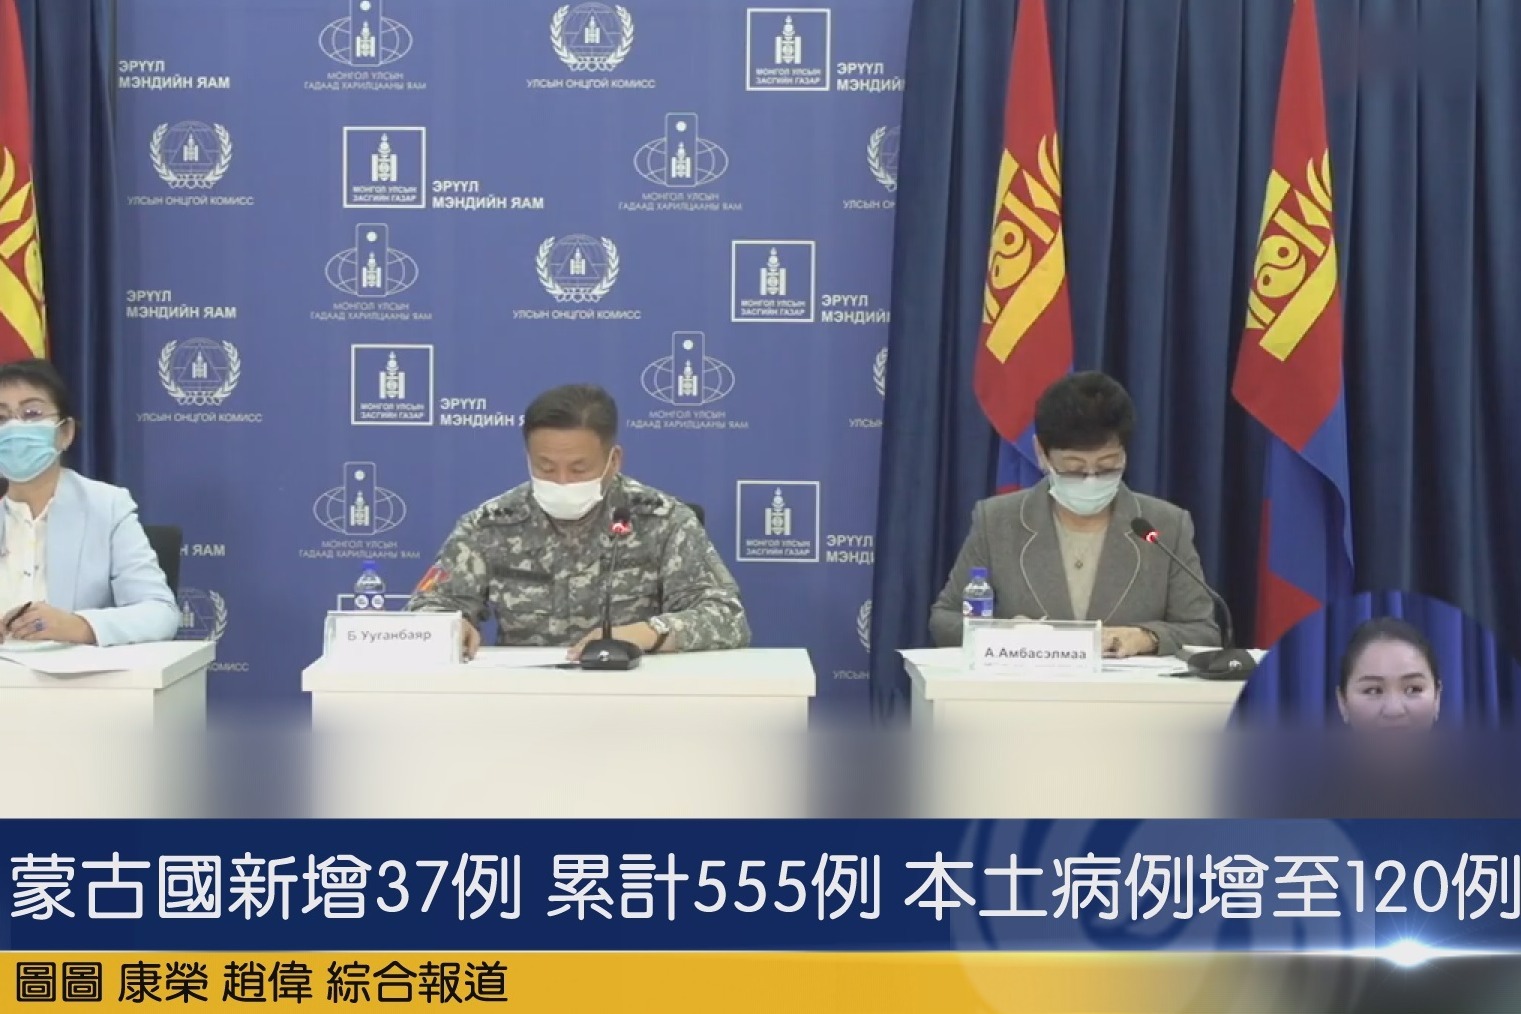 蒙古国新增37例 累计555例 本土病例增至120例